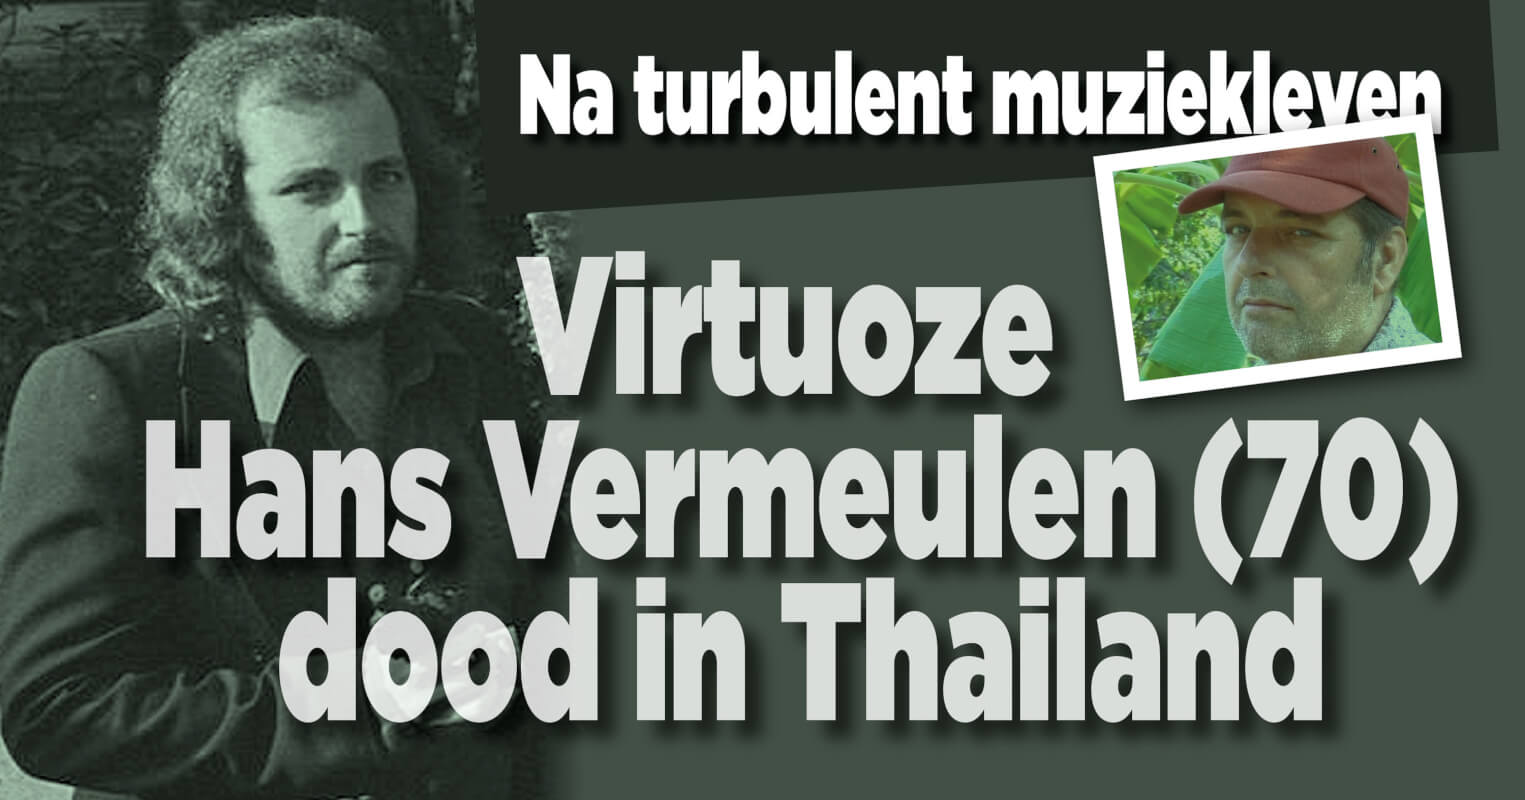 Virtuoze Hans Vermeulen verlies voor Nederlandse muziek